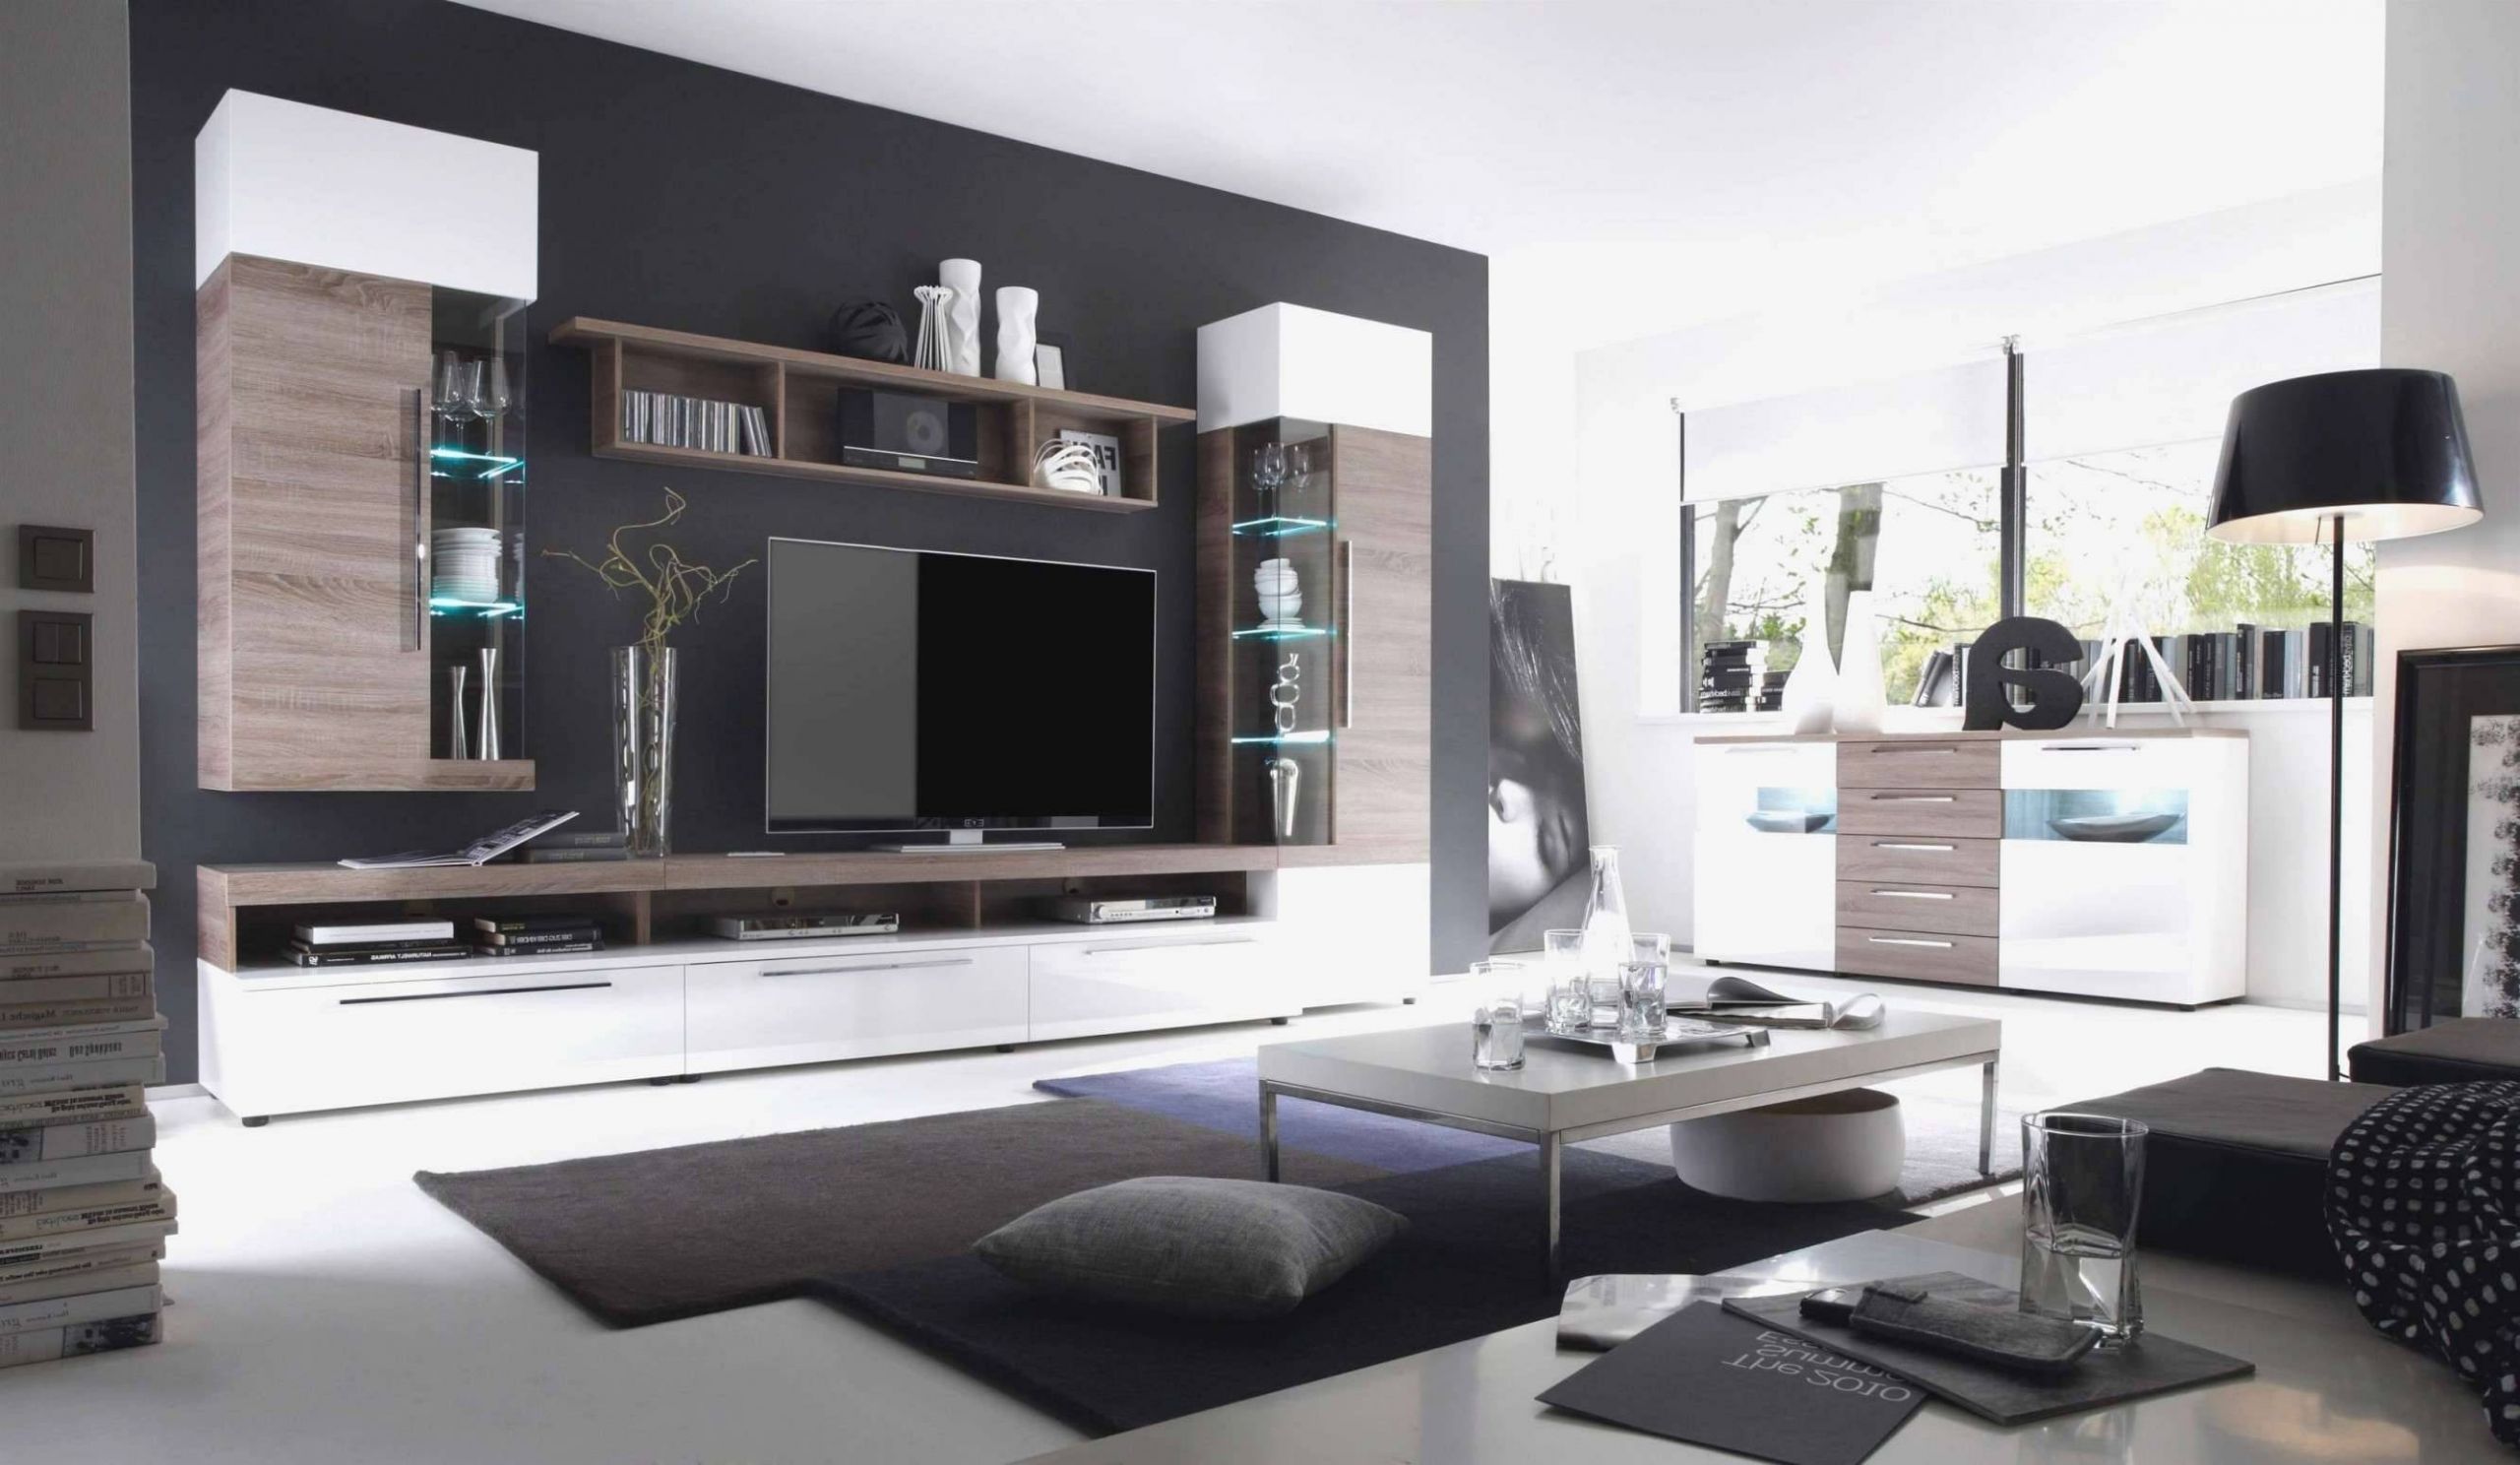 Deko Billig Best Of Best Wohnzimmer Sideboard Design Inspirations